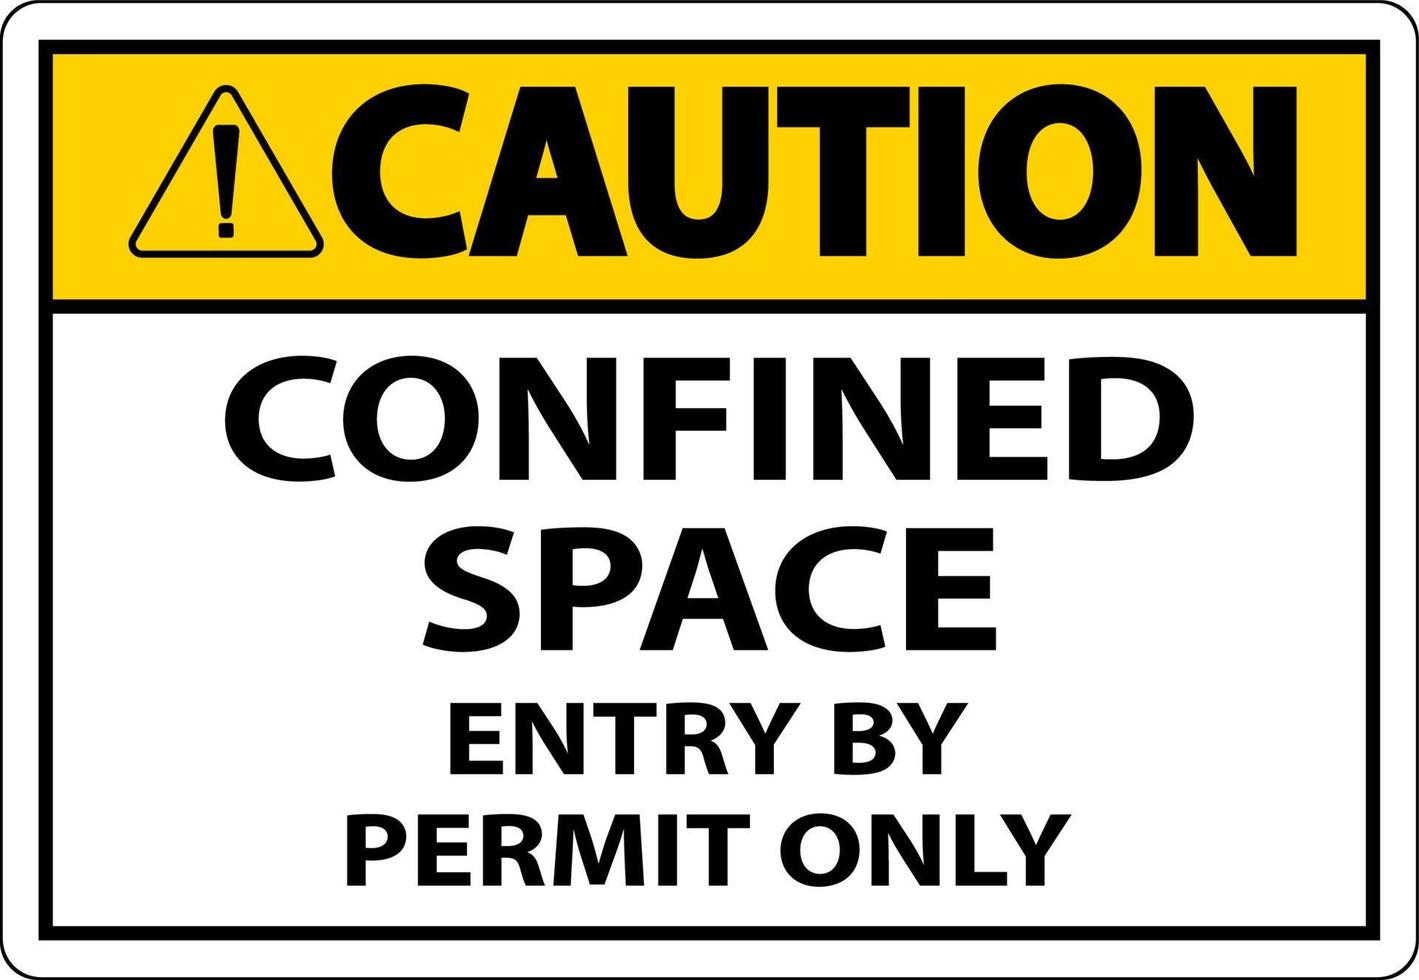 Attention entrée dans un espace confiné avec permis uniquement vecteur